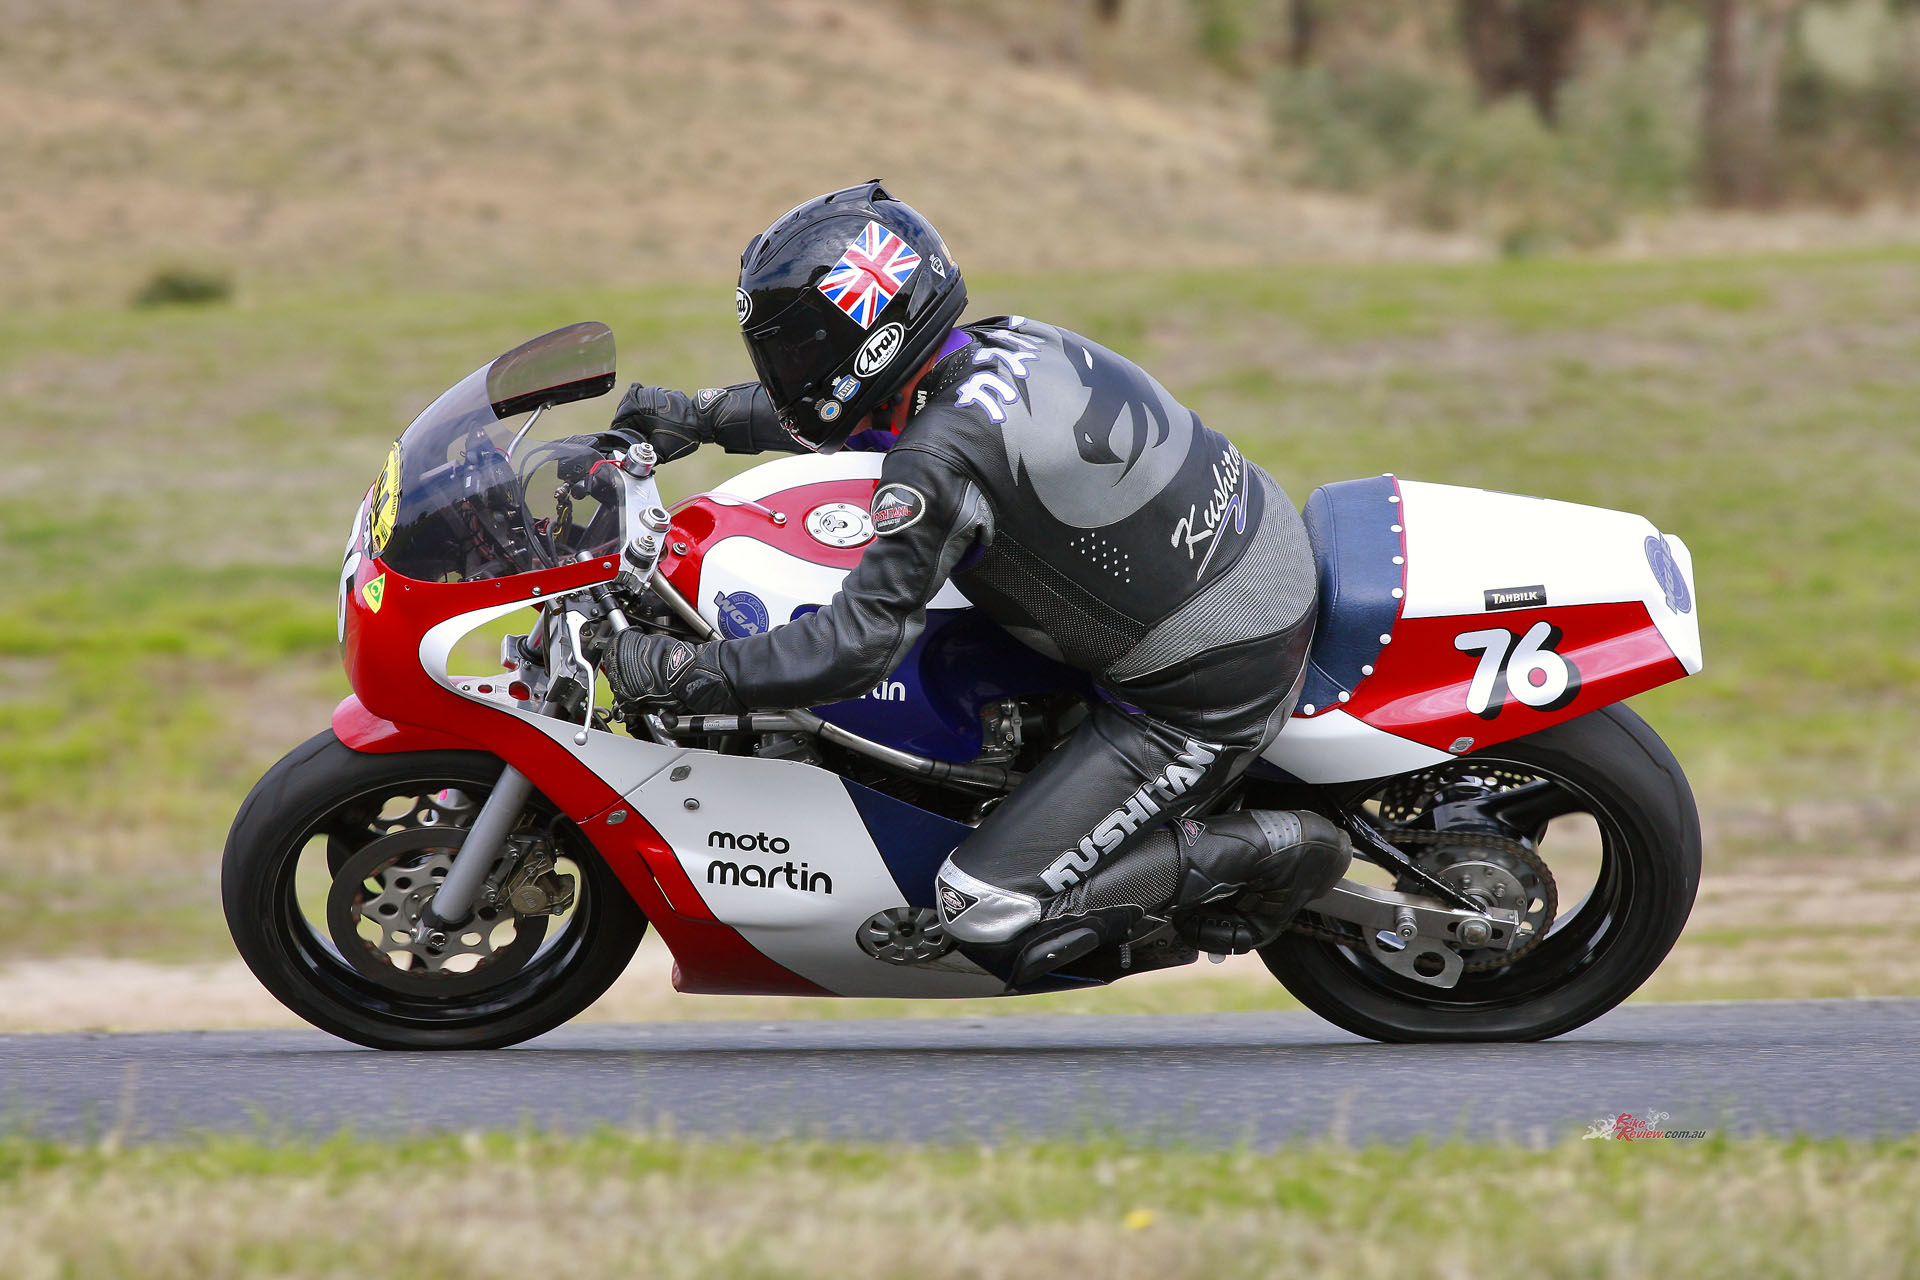 The chance to ride the Moto Martin Suzuki came at MA’s annual Broadford Bike Bonanza on the tight 2.16km track.